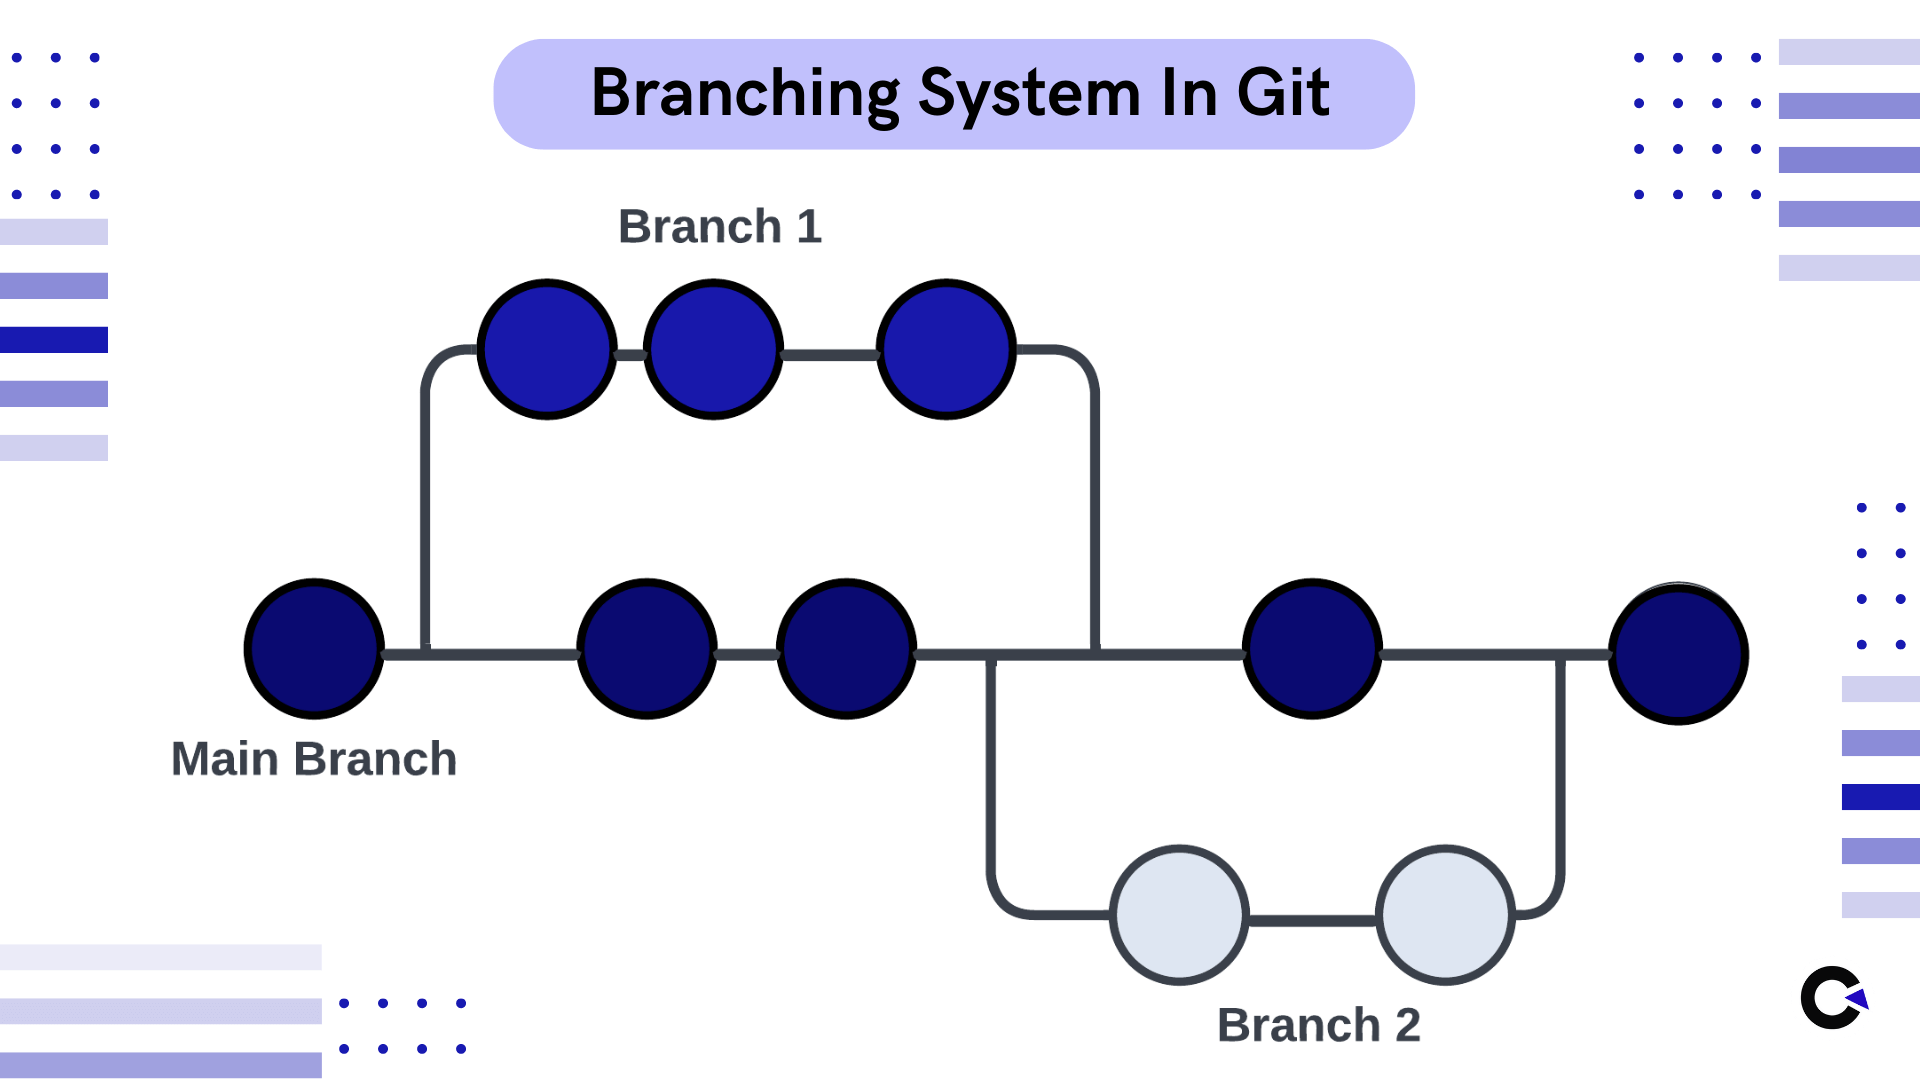 Branching System in GIT